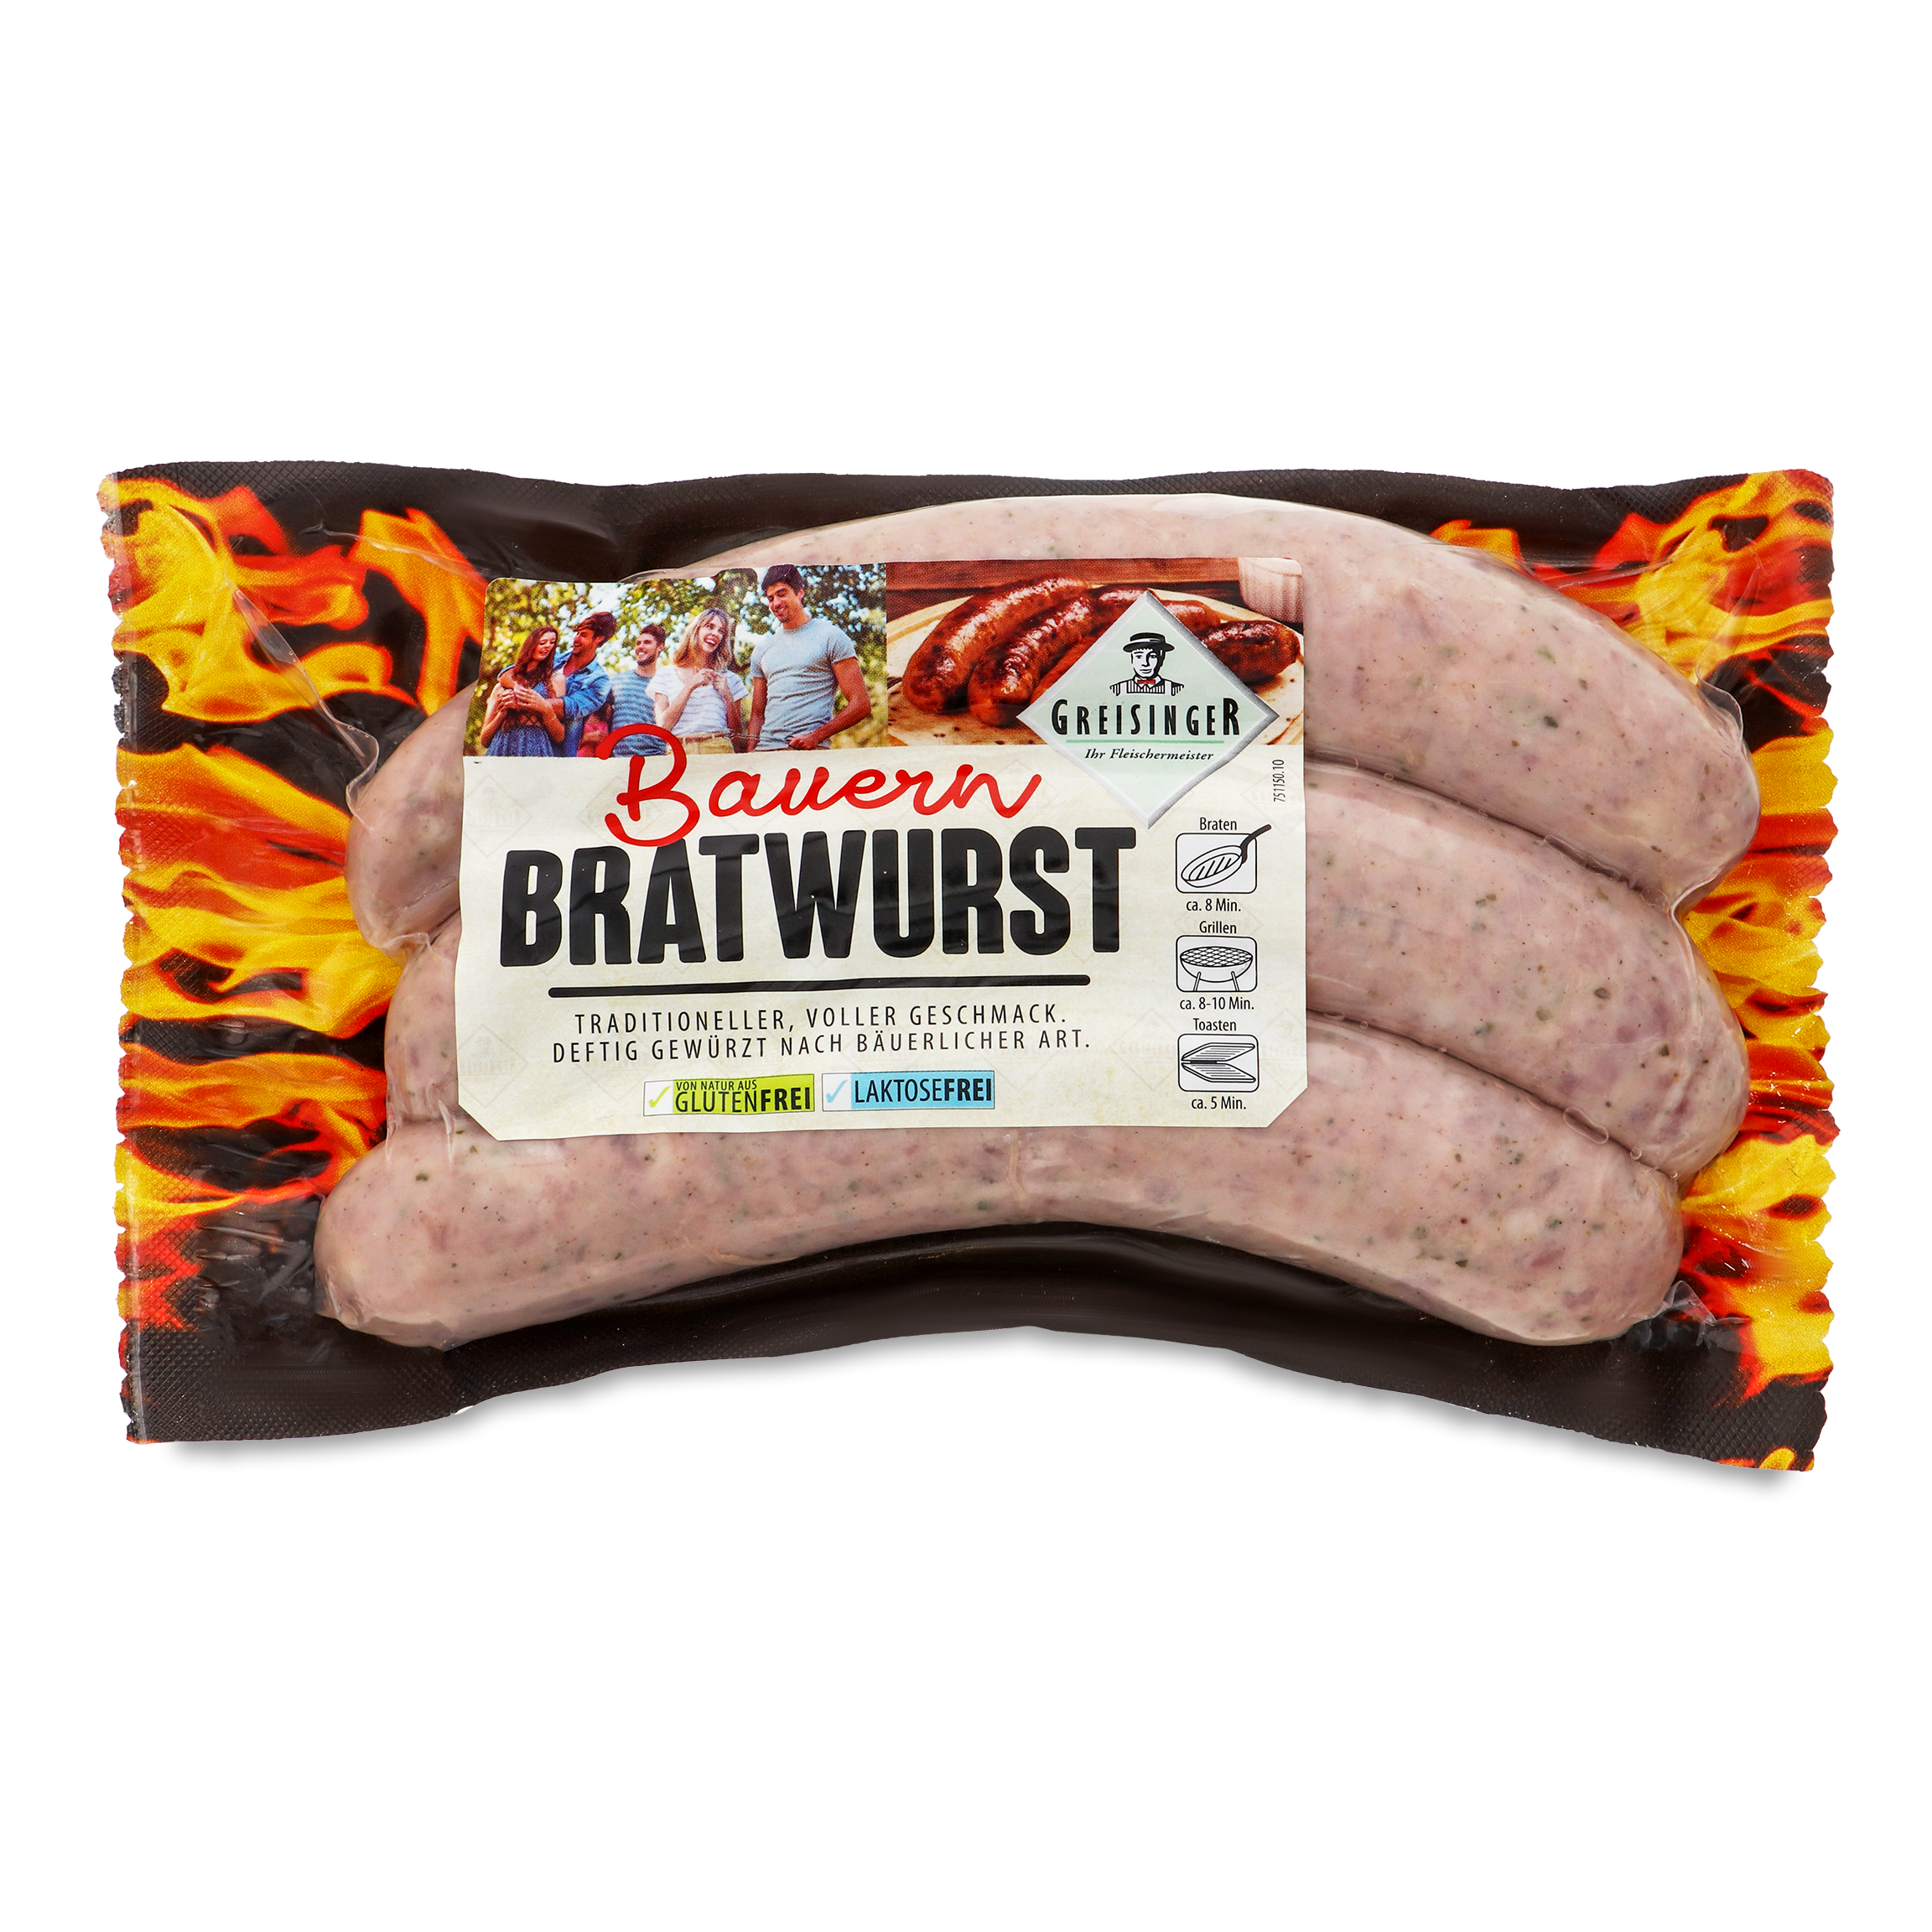 Greisinger Bratwurst Sausages Farm-style 360g